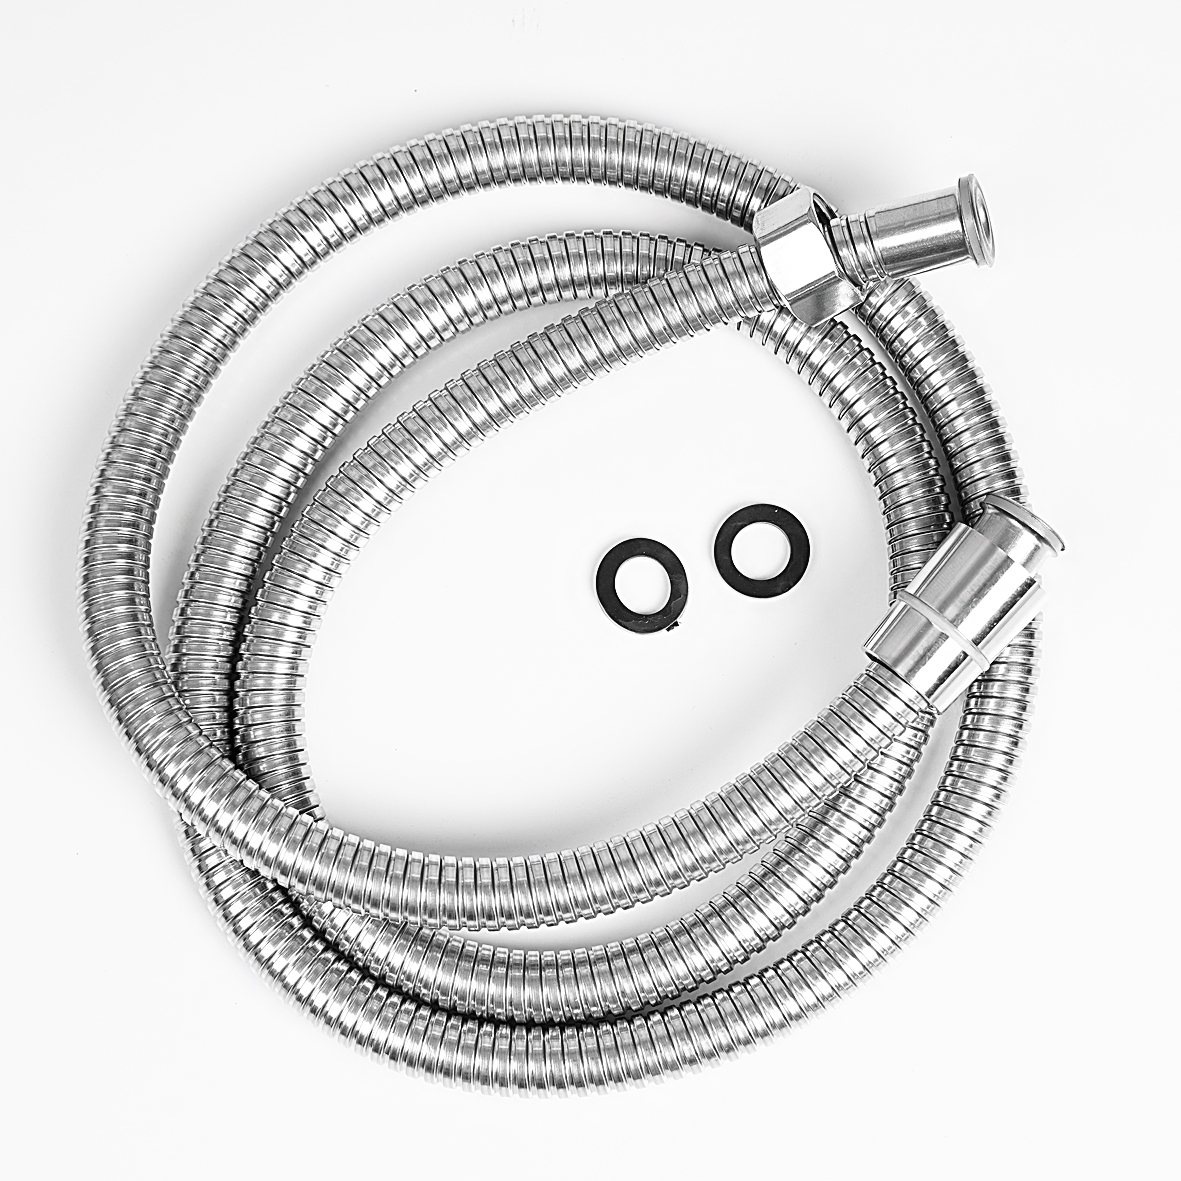 Bộ dây sen tắm – Bát sen Đồng và dây Inox 304 cao cấp